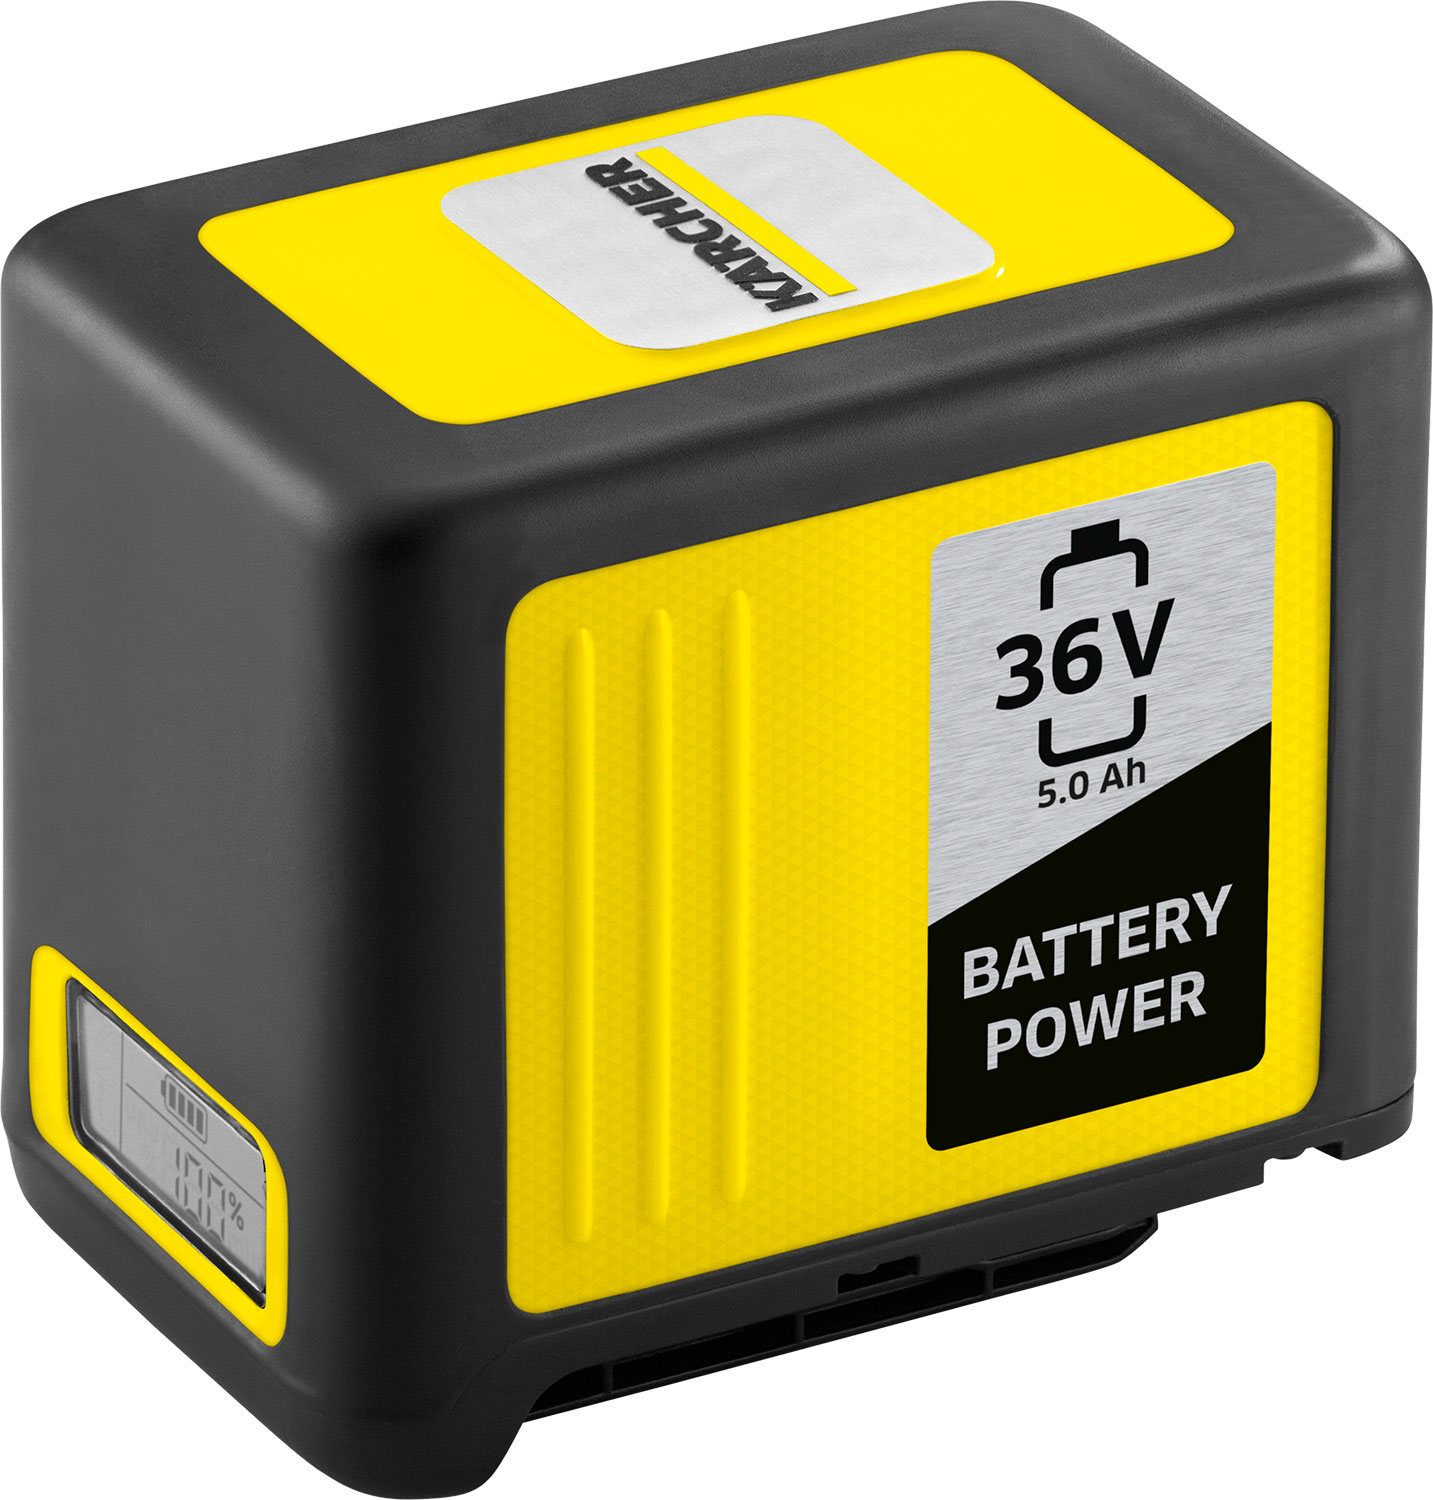 Kärcher Battery Power 36/50 Wechselakku 36 V / 5.0 Ah